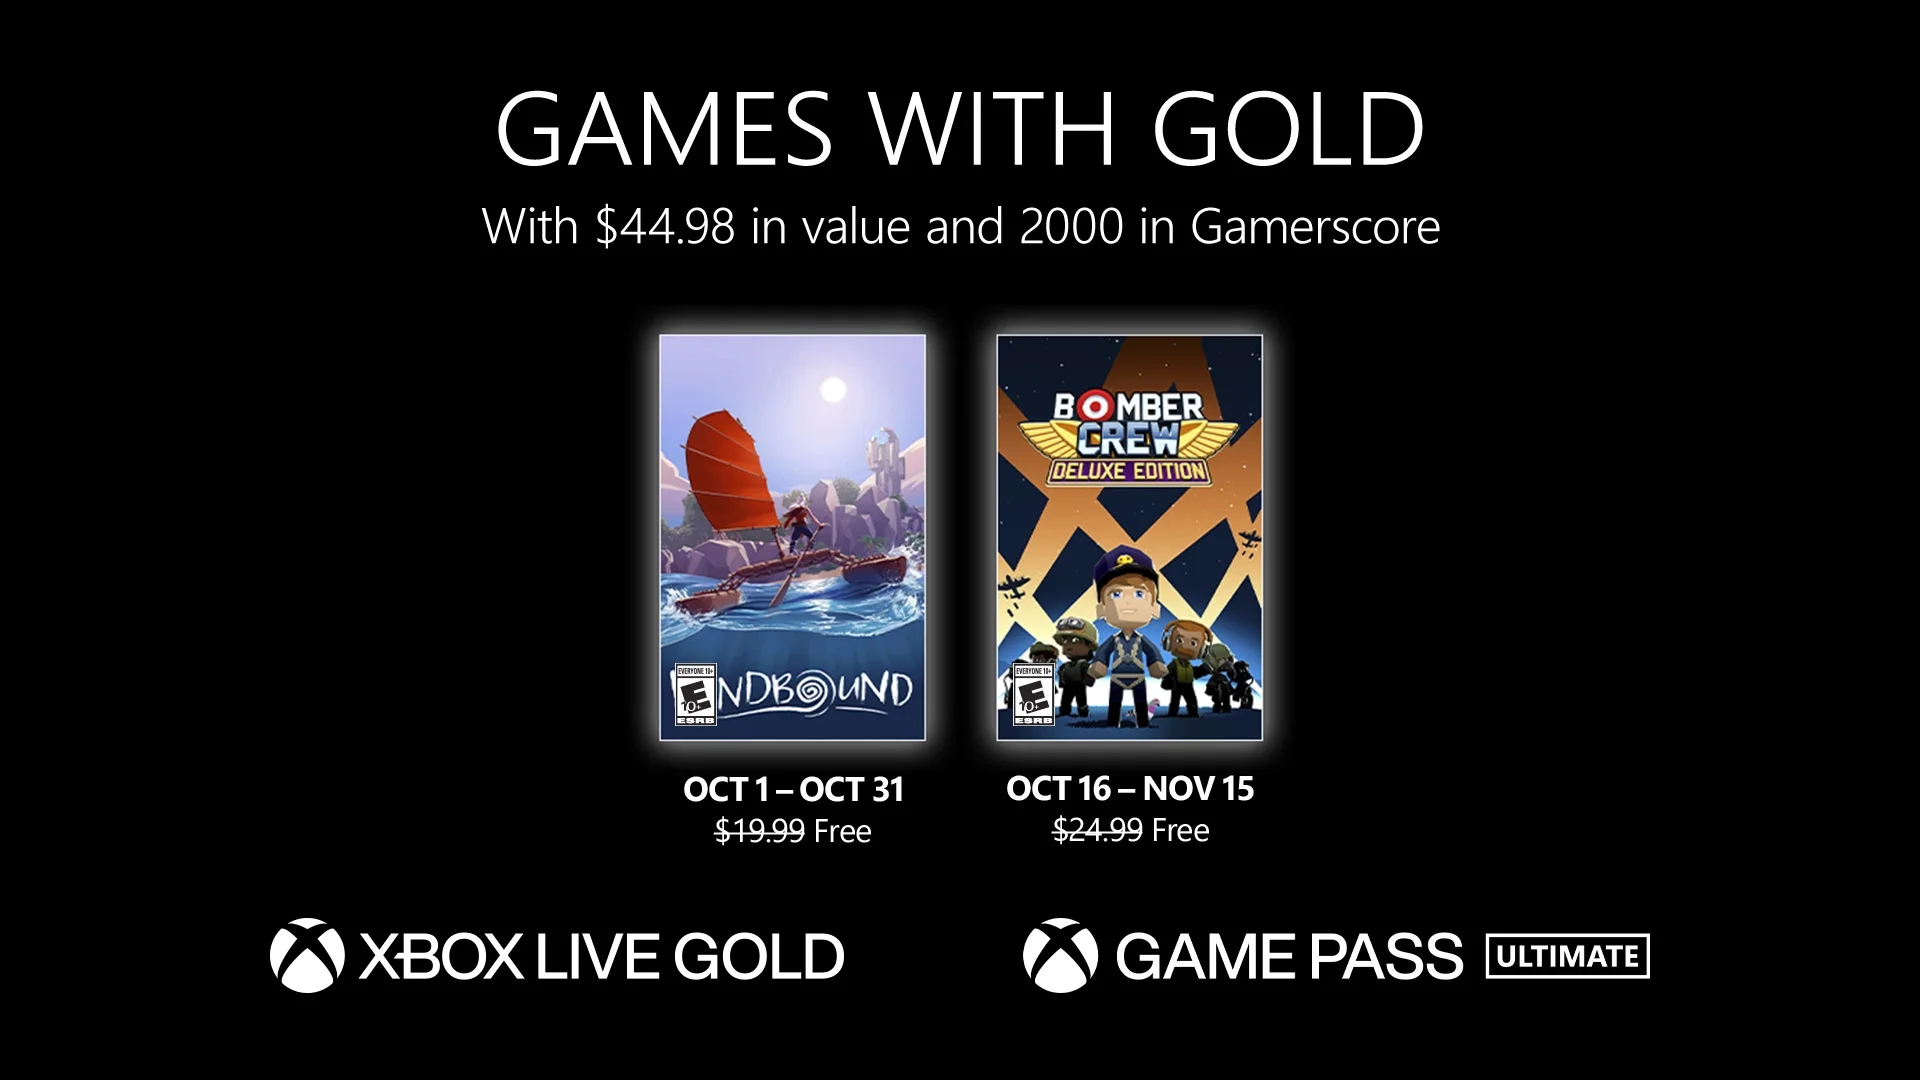 В октябре подписчики Xbox Live Gold бесплатно получат Windbound и Bomber Crew - фото 1